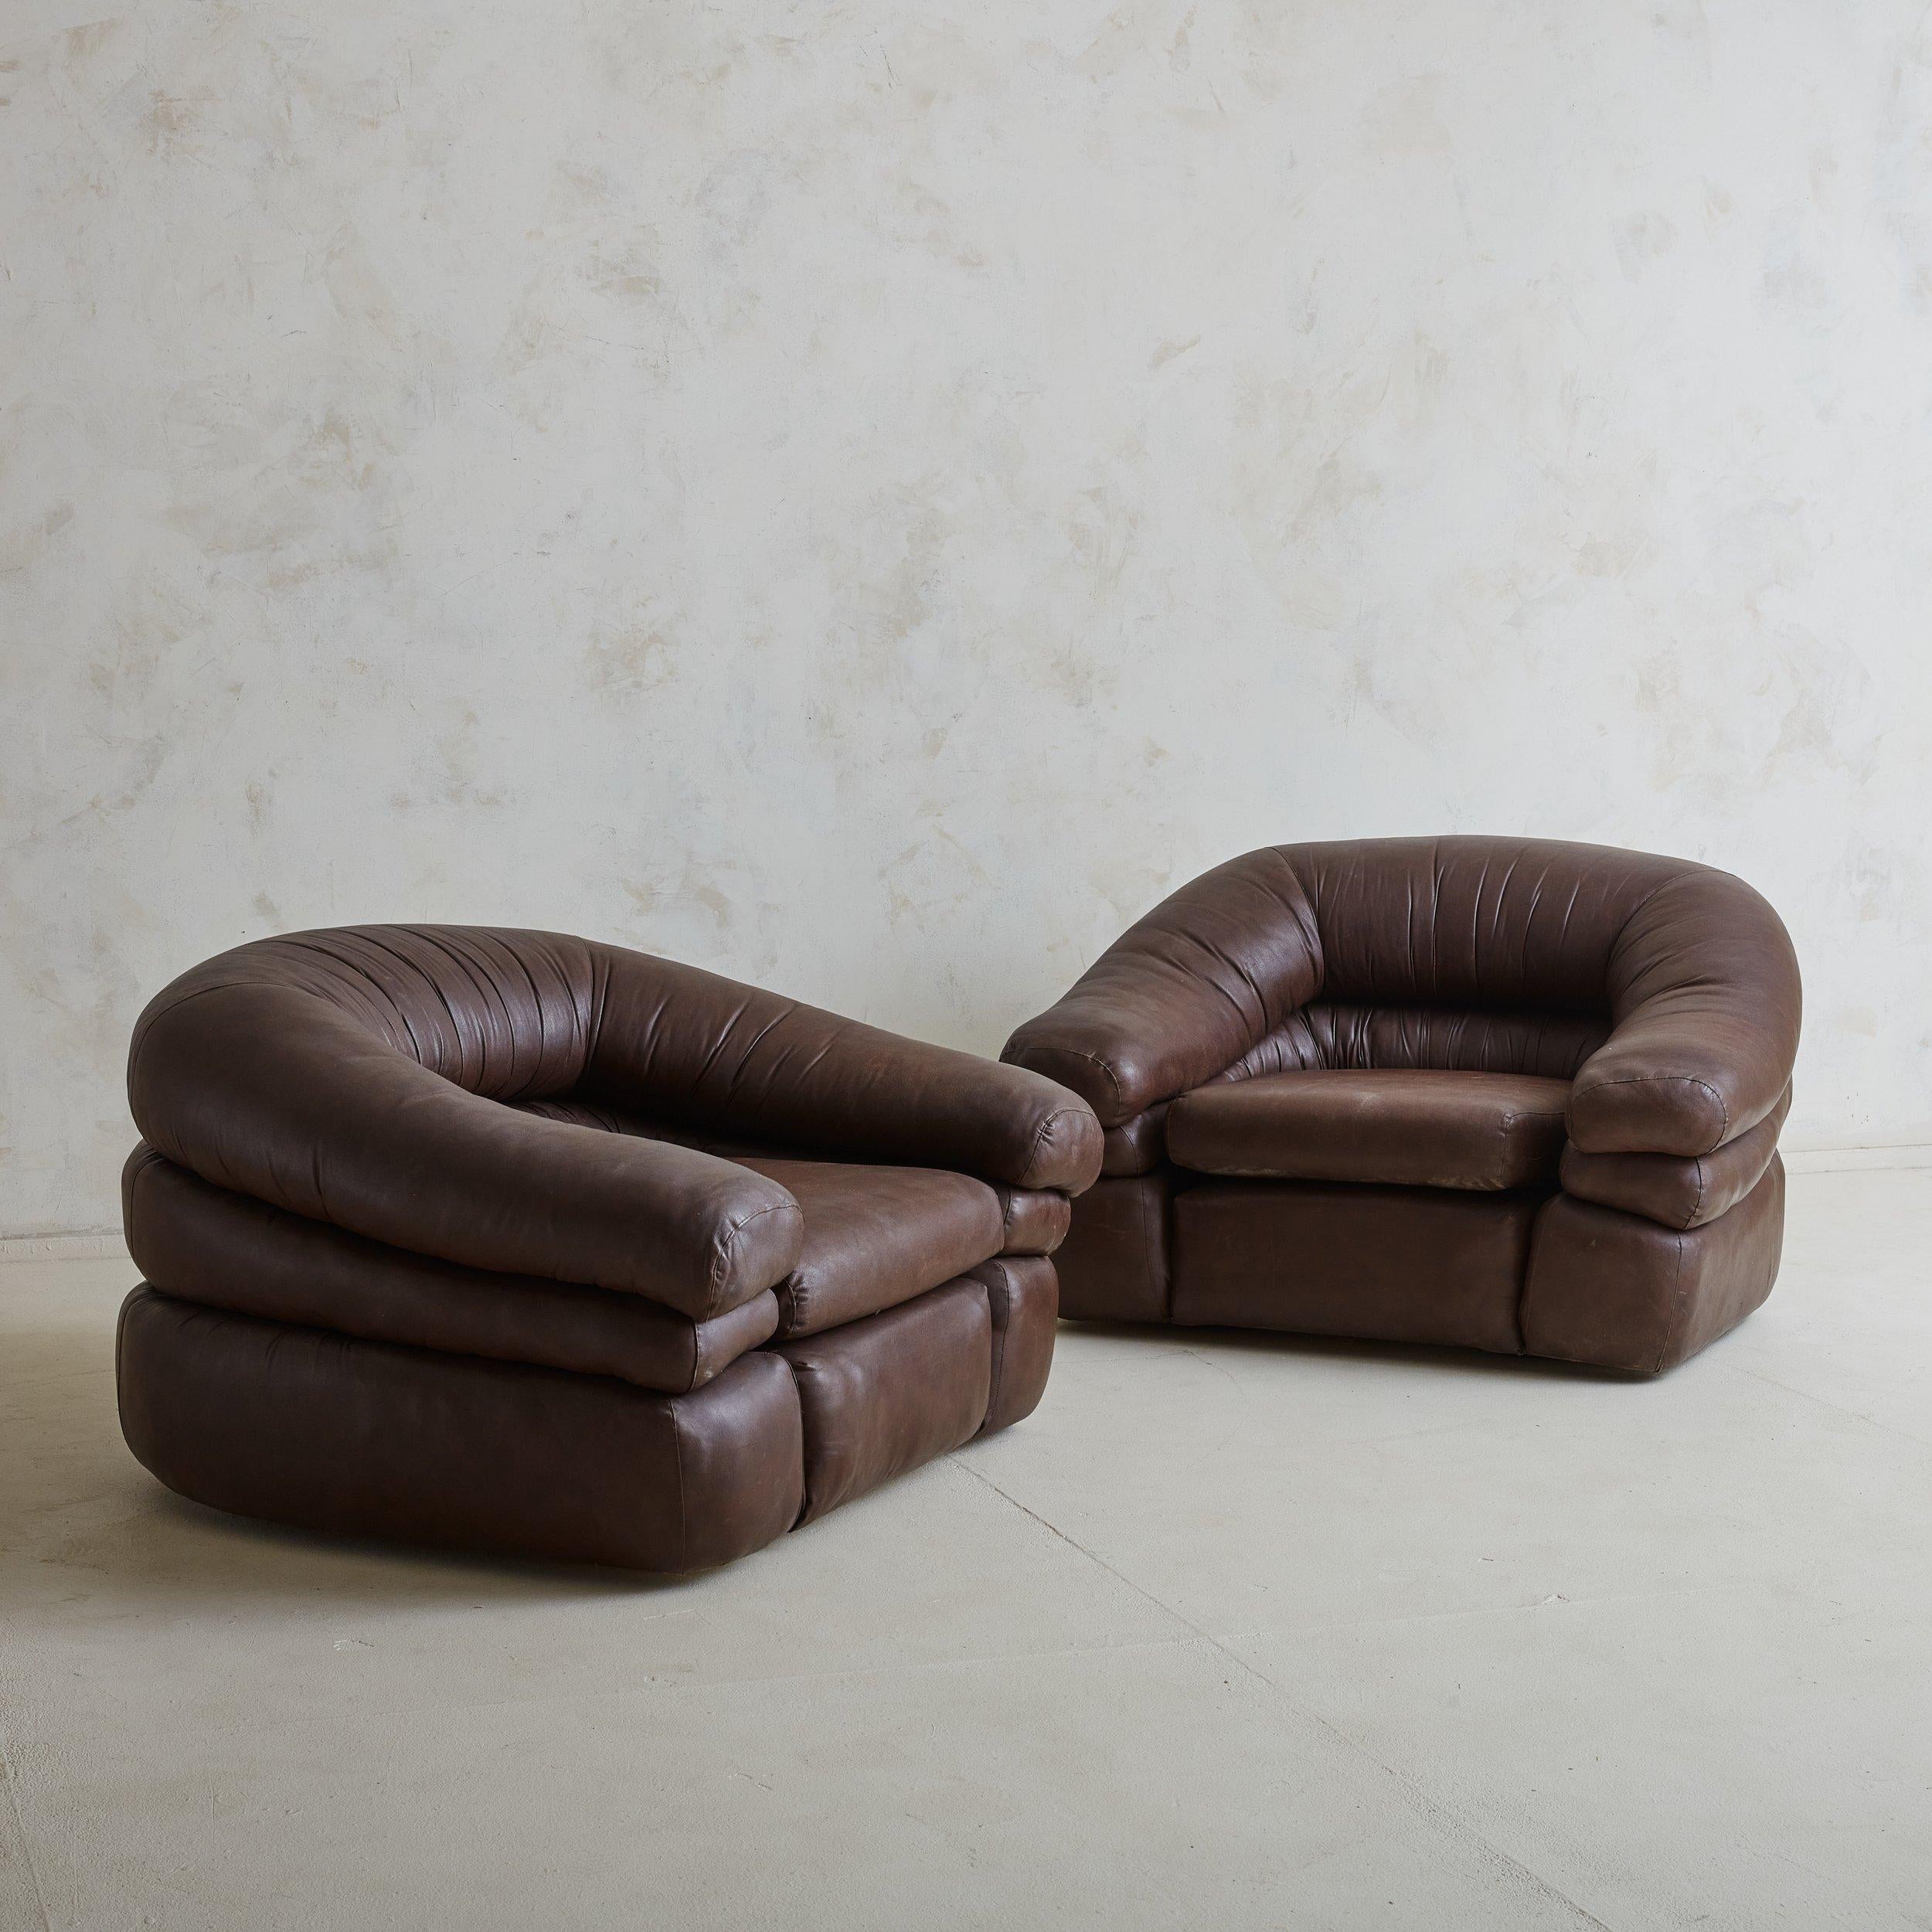 Ein Paar seltene italienische Sessel aus patiniertem Leder, entworfen von Gionathan de Pas, Donato D'Urbino und Paolo Lomazzi in den 1960er Jahren. Diese wannenförmigen Loungesessel sind vollständig aus Schaumstoff geformt und mit dickem, weichem